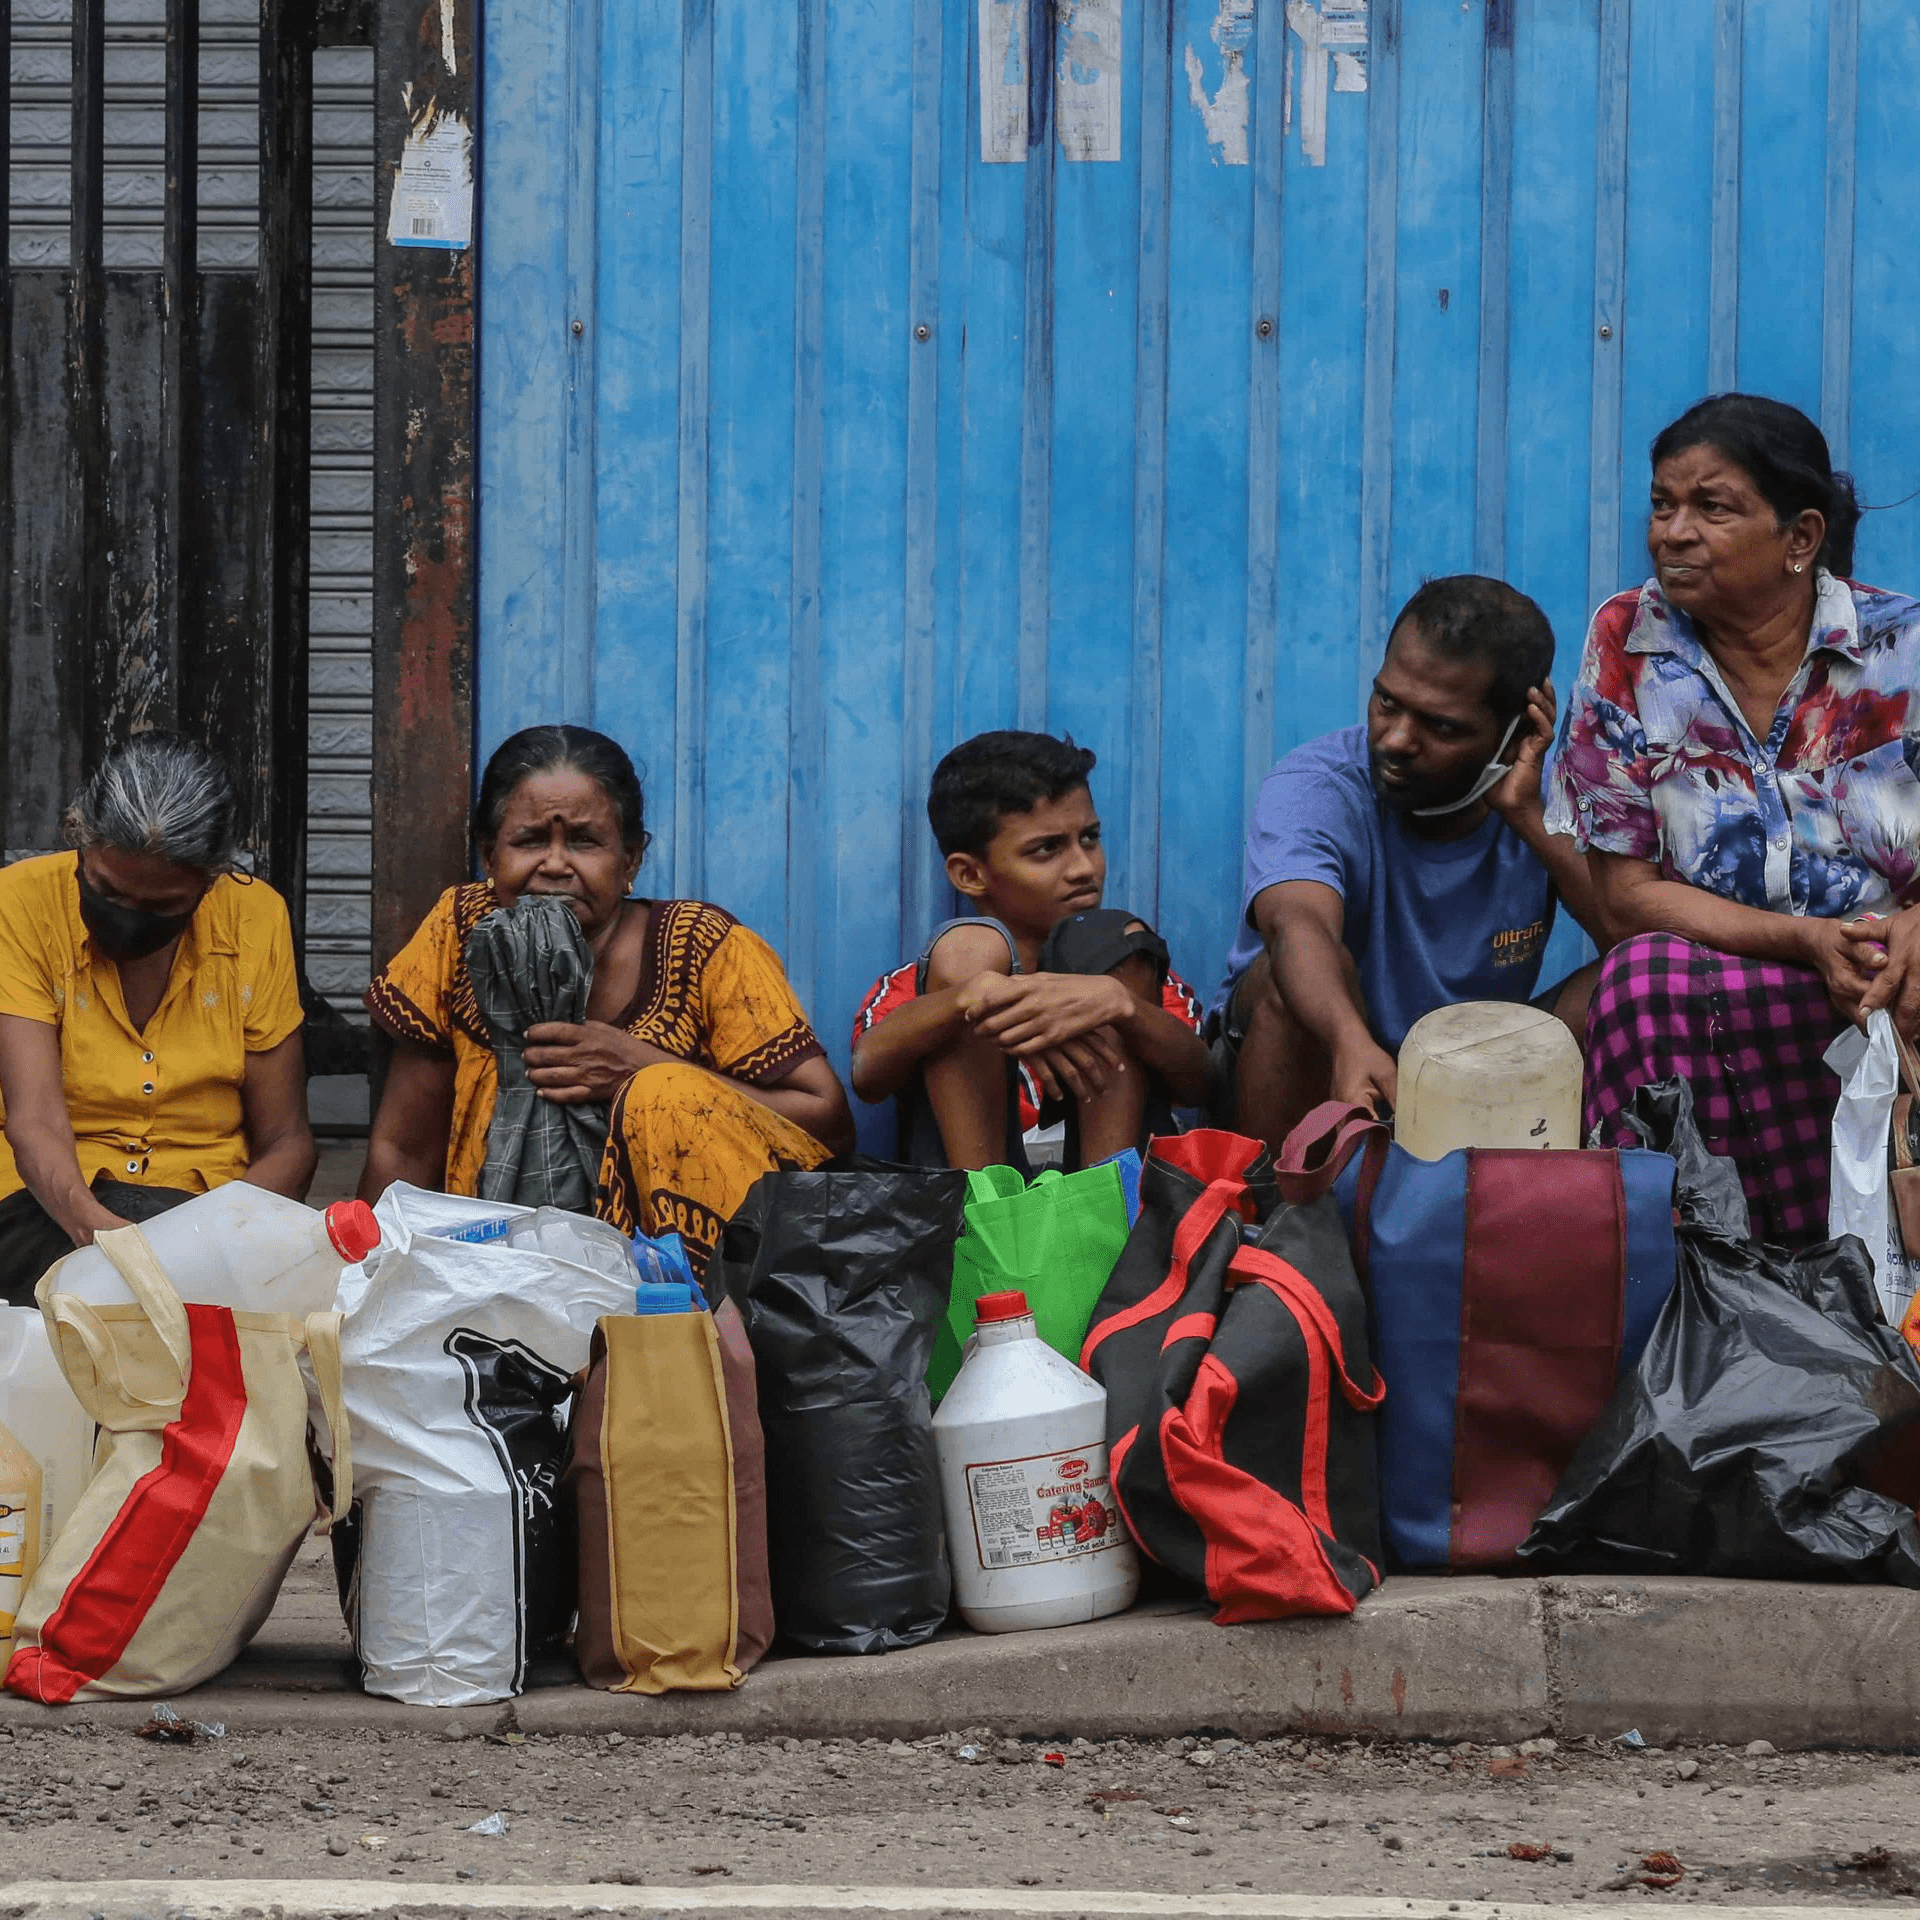 Sri Lanka's Economy in Collapse